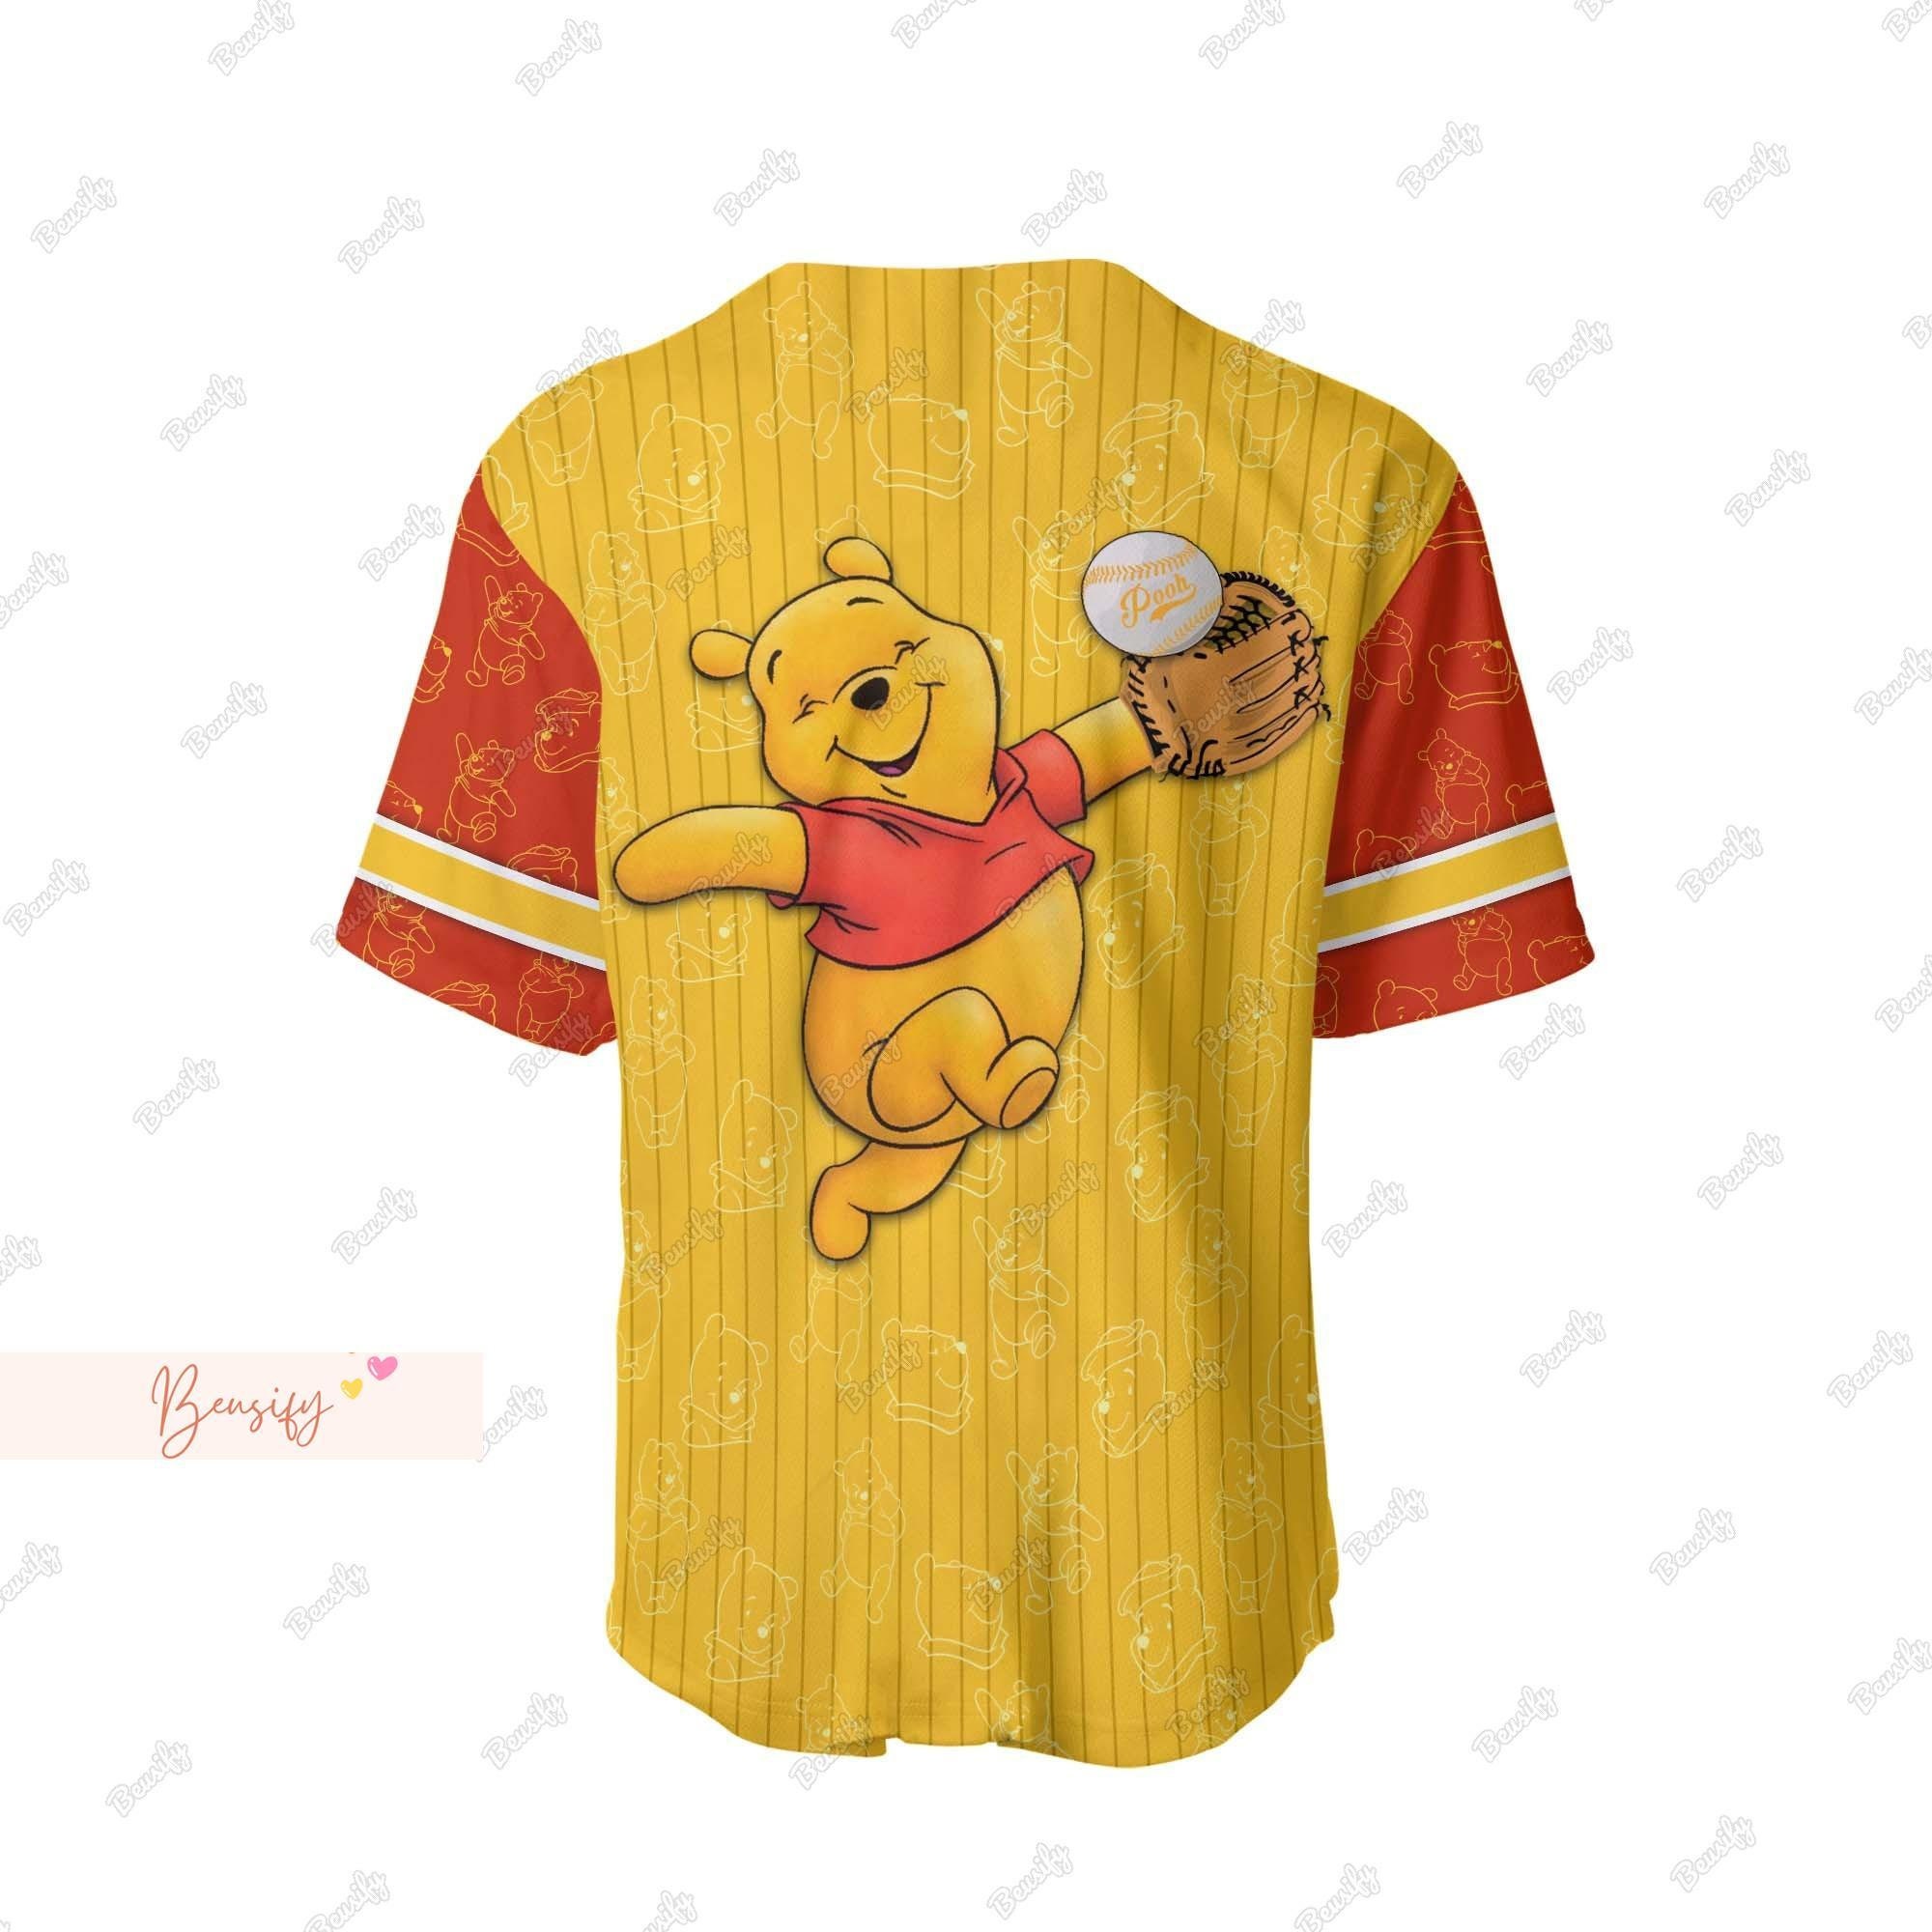 Pooh Jersey Shirt, Personalized Pooh Baseball Shirt, Winnie The Pooh Jersey